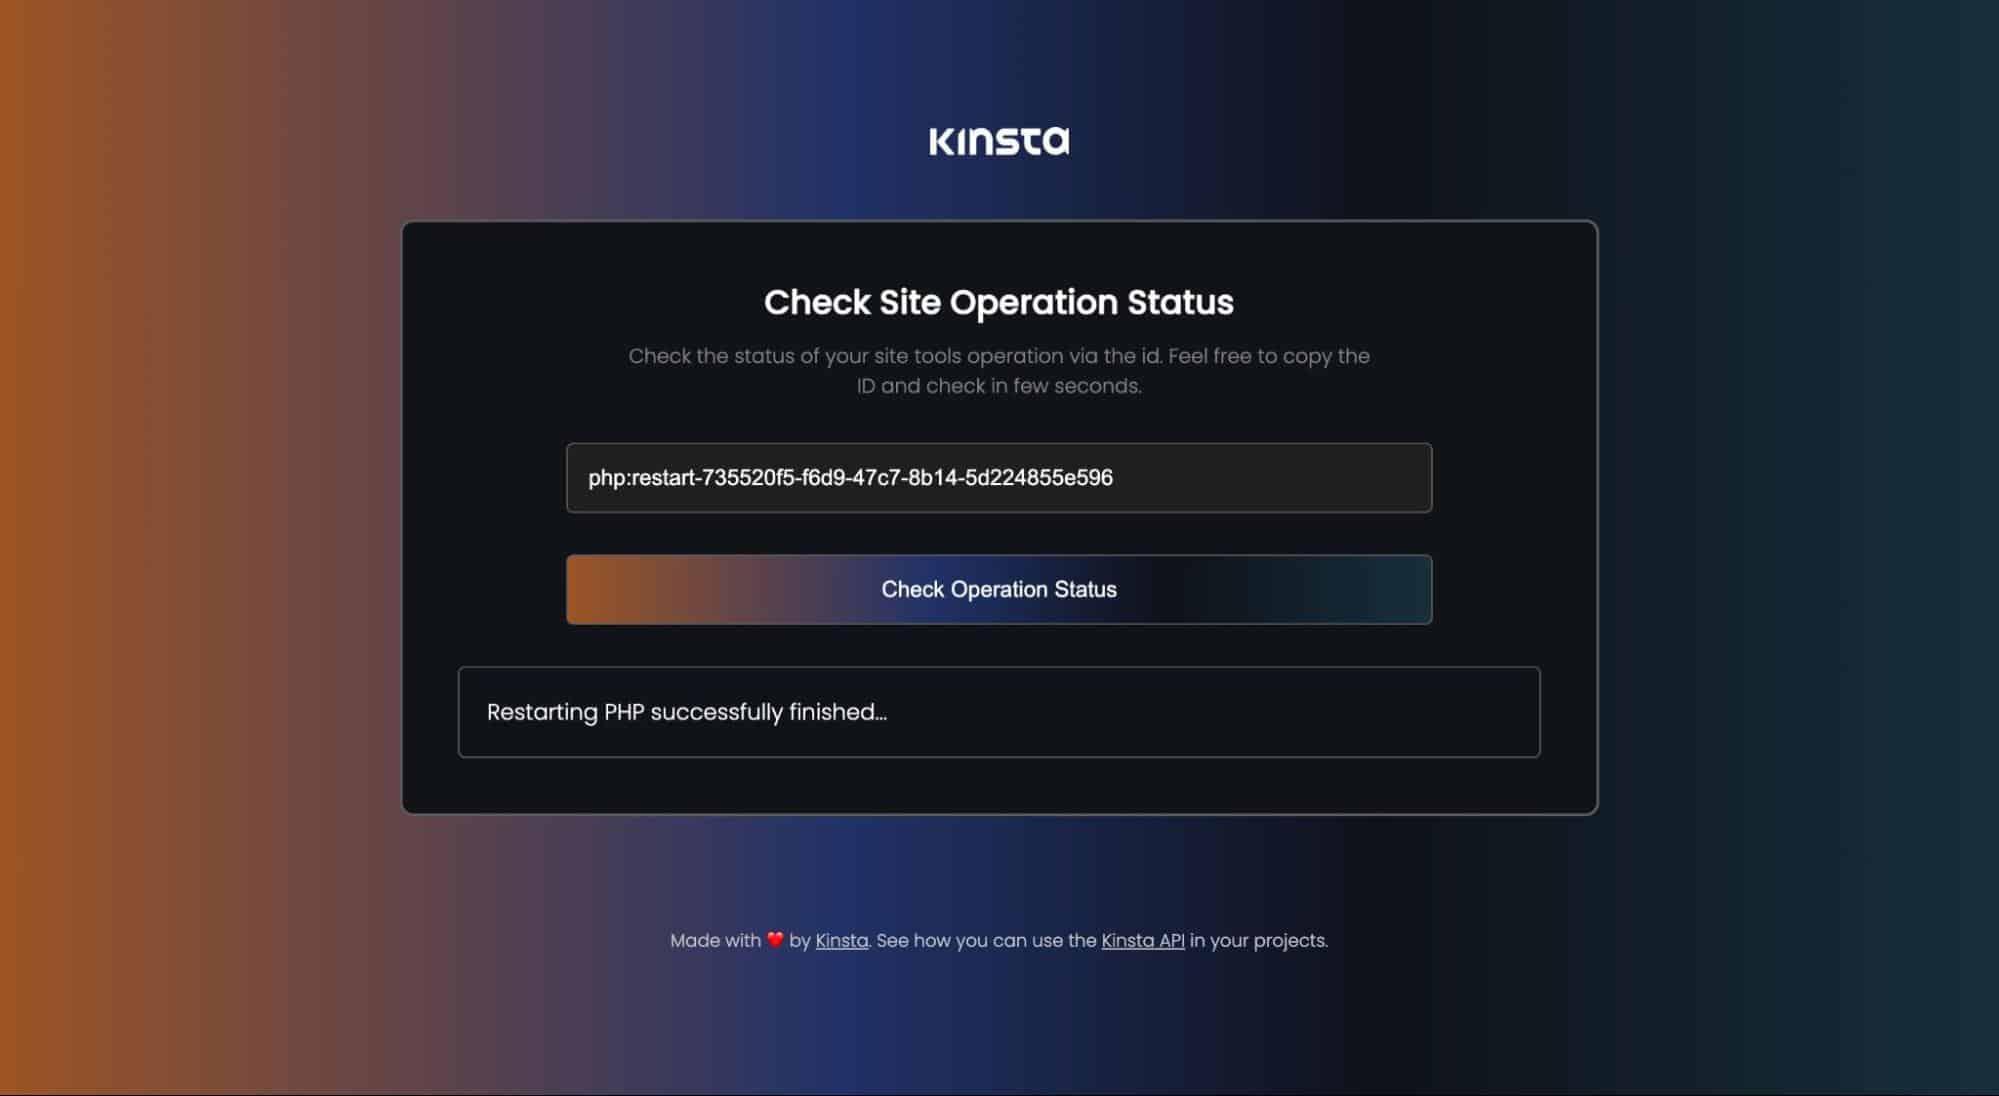 Statut de l'opération des outils du site Kinsta.